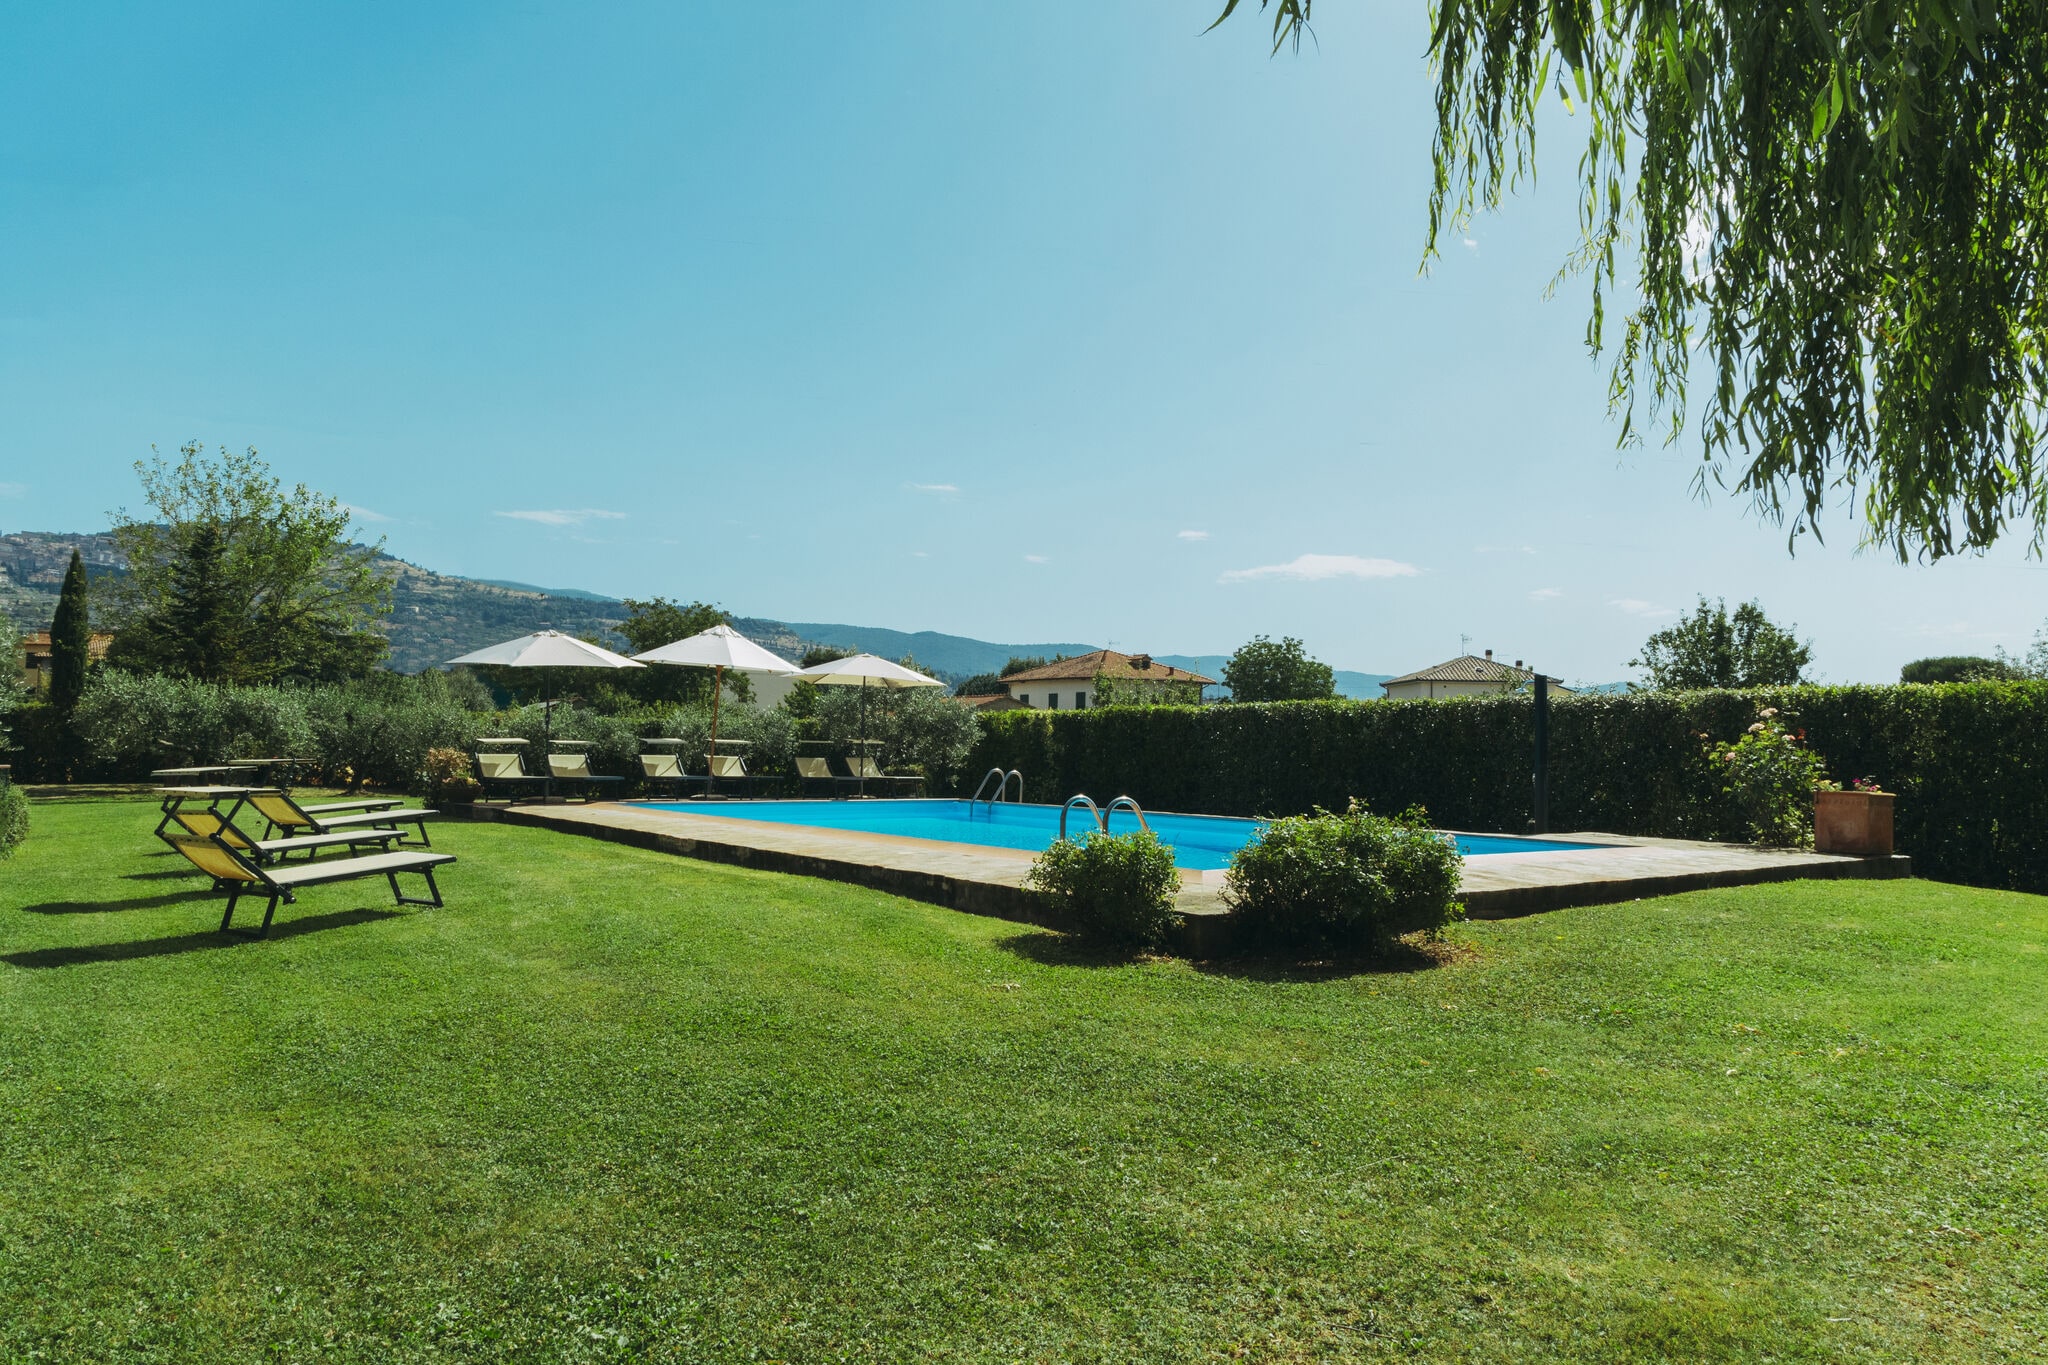 Agriturismo met privéterras, tuin en zwembad, uitzicht op de stad Cortona